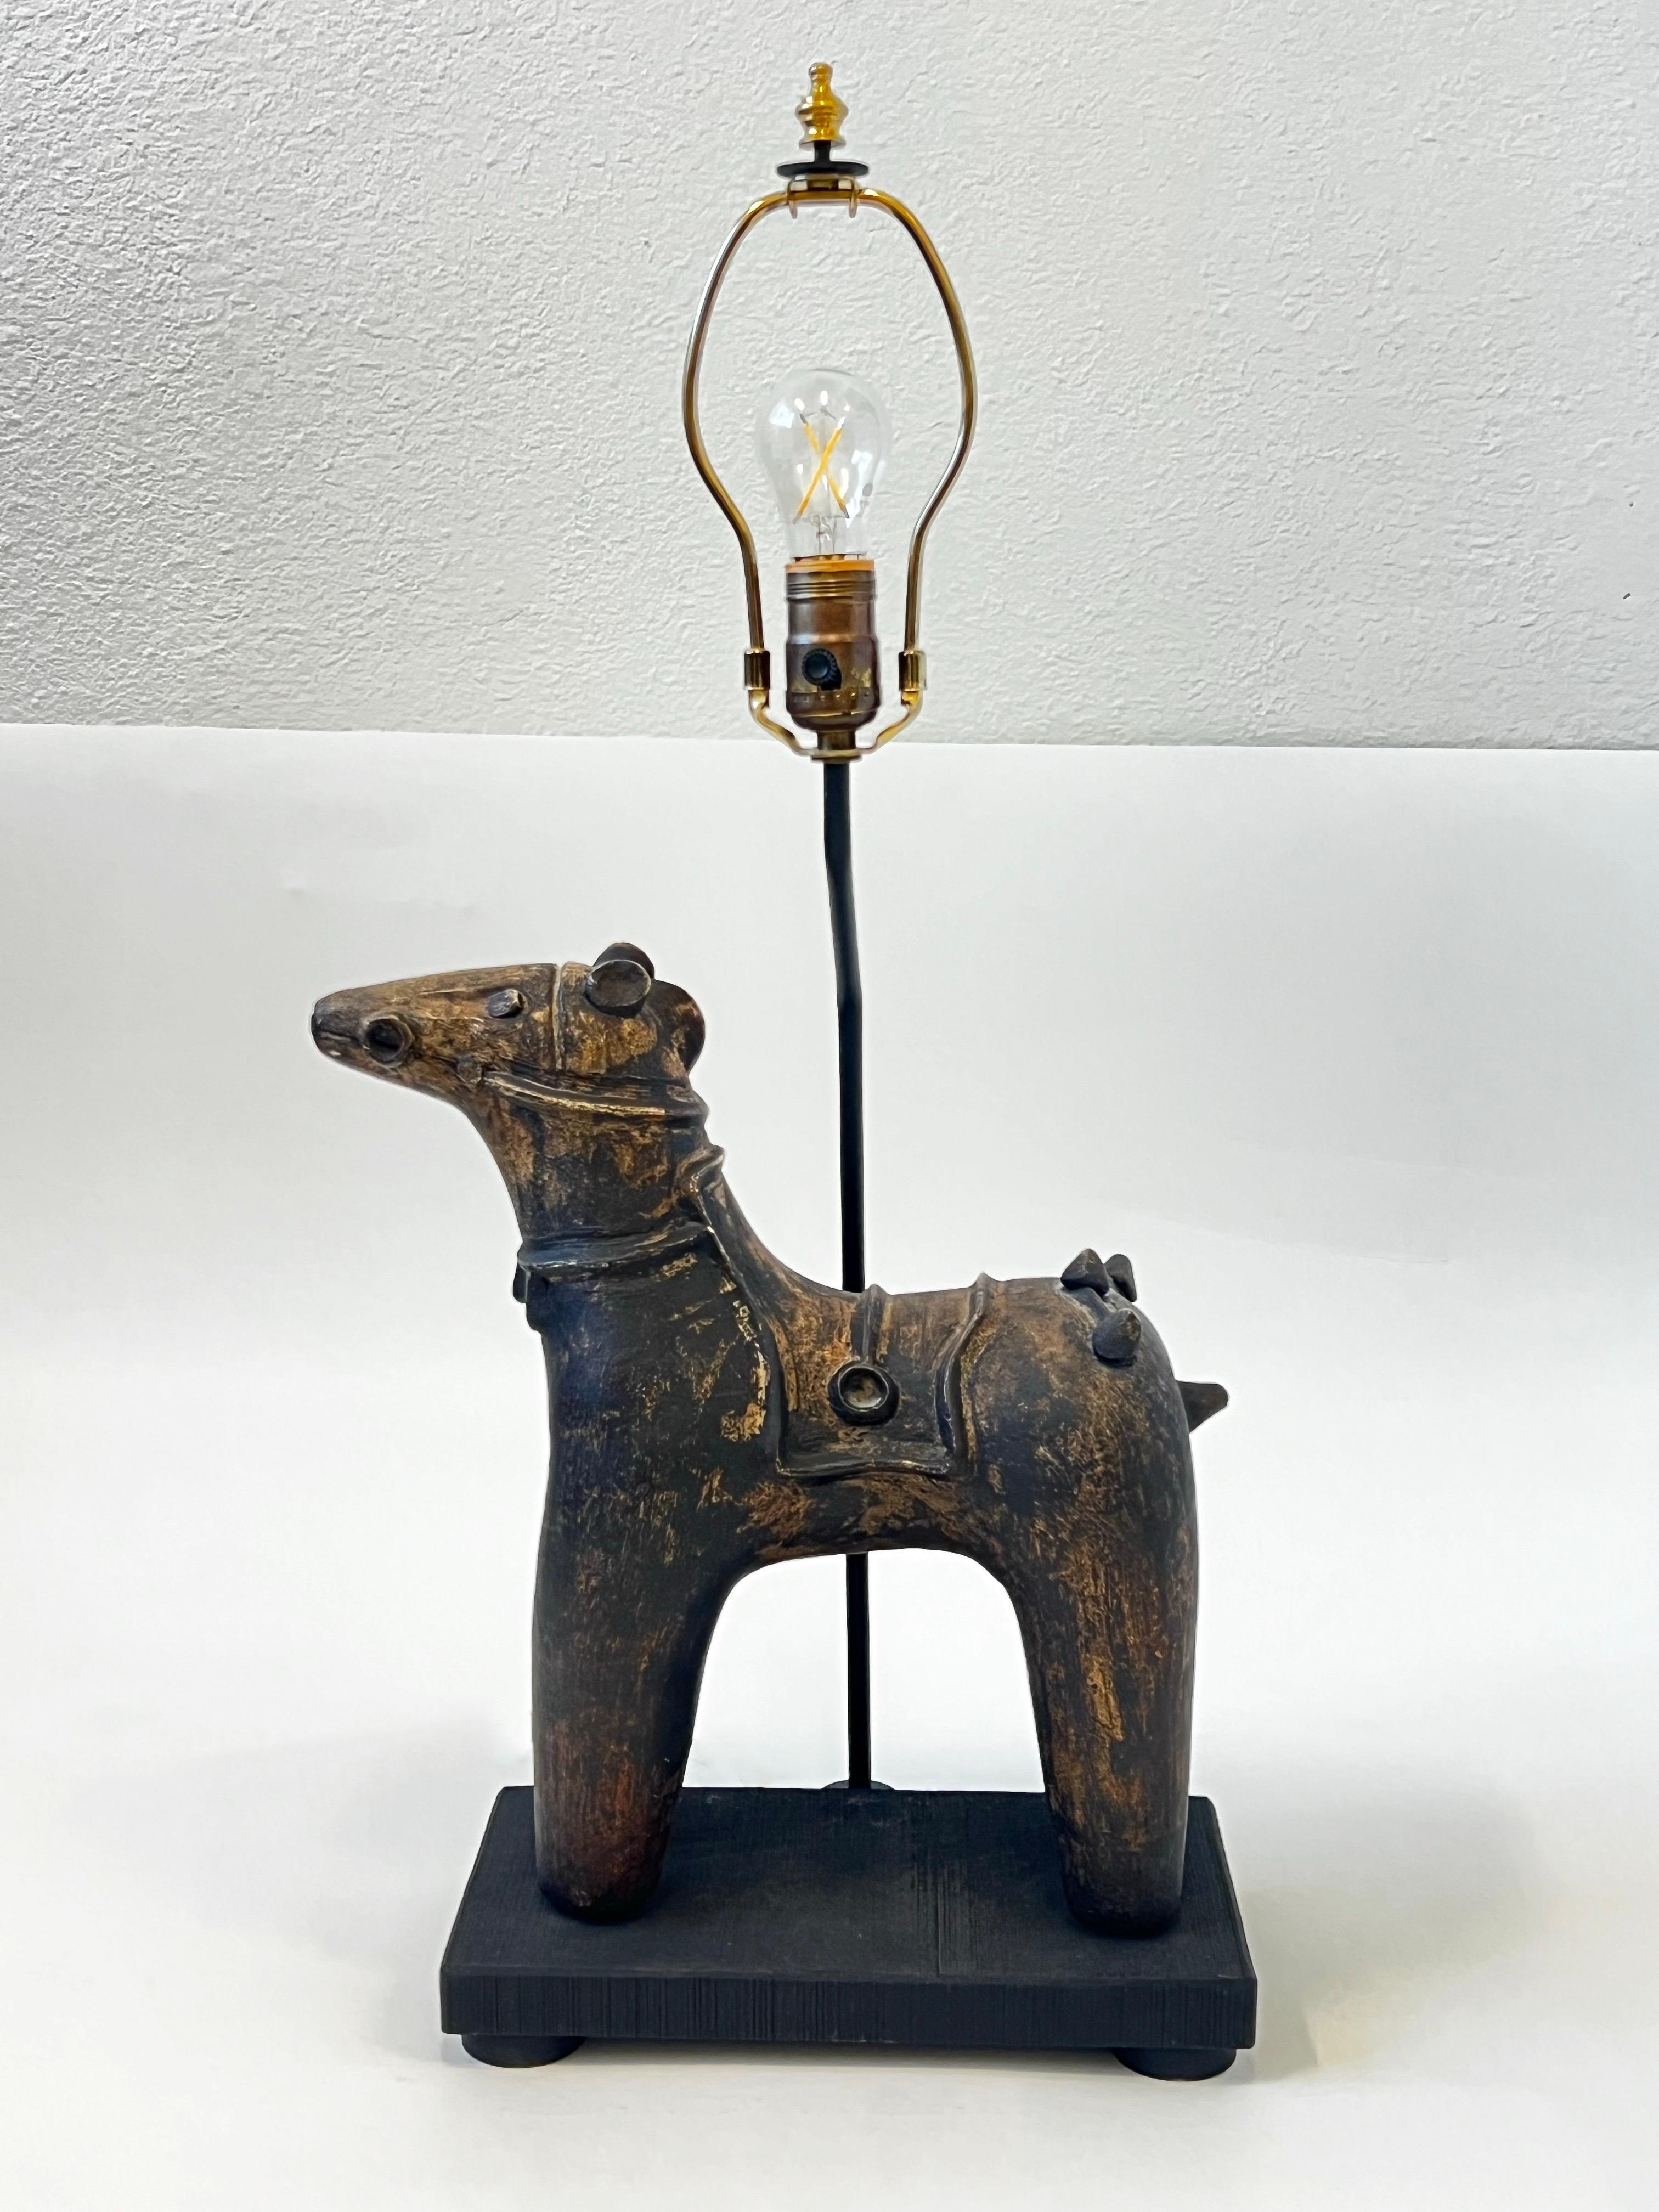 Lampe de table à cheval en céramique des années 1970 par Frederick Cooper Lamps. Dans un bel état vintage.
La prise à trois voies a été remplacée. Il faut une ampoule d'édition de 150 max. 

Mesures :
13